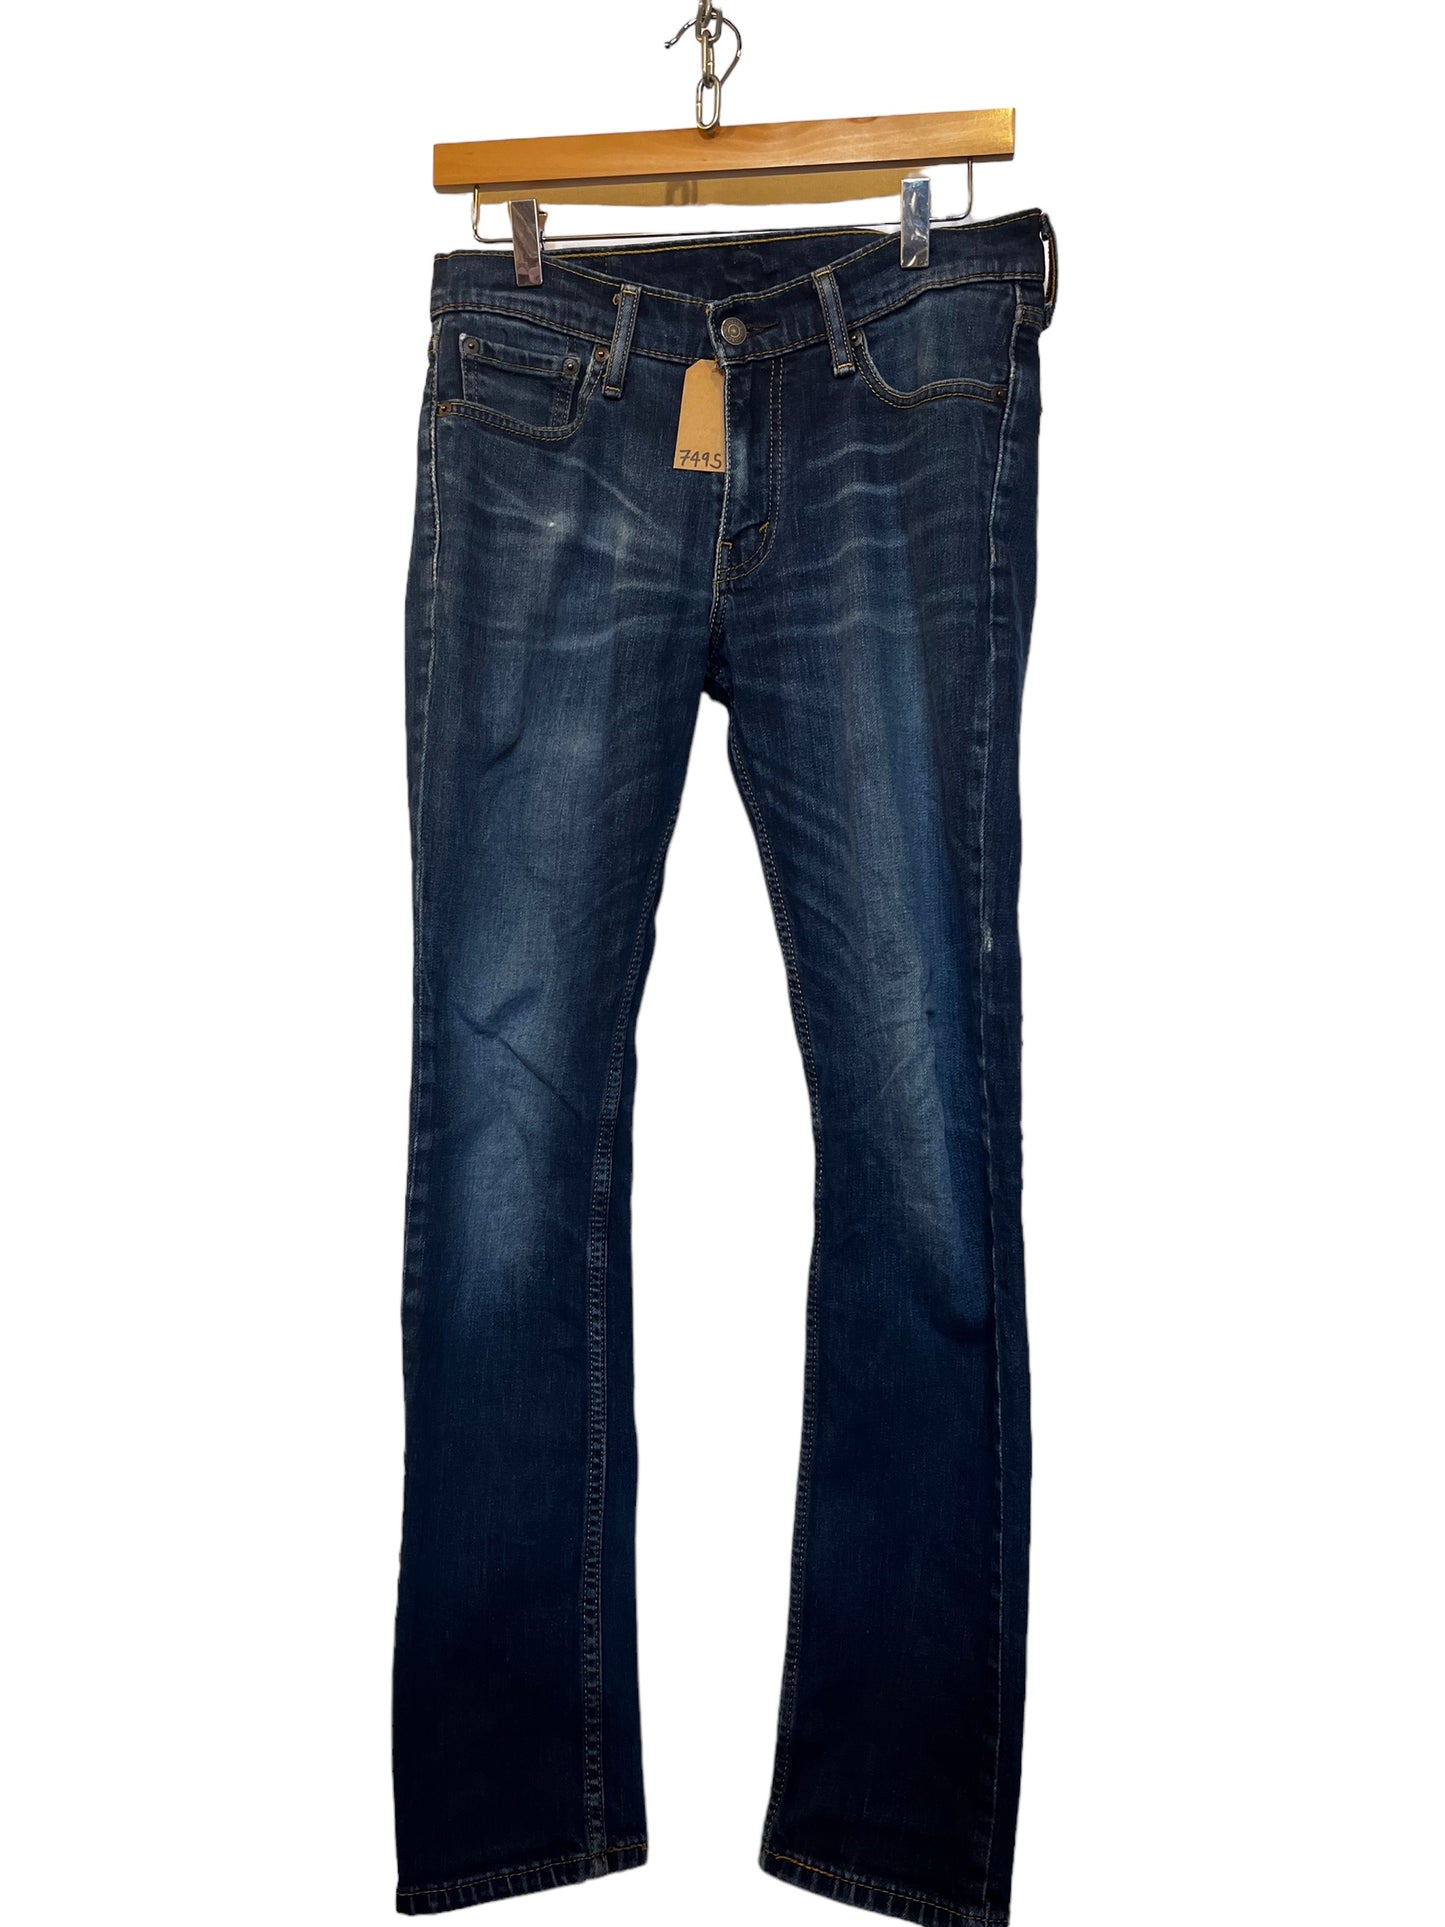 Levi 511 jeans (30x32)